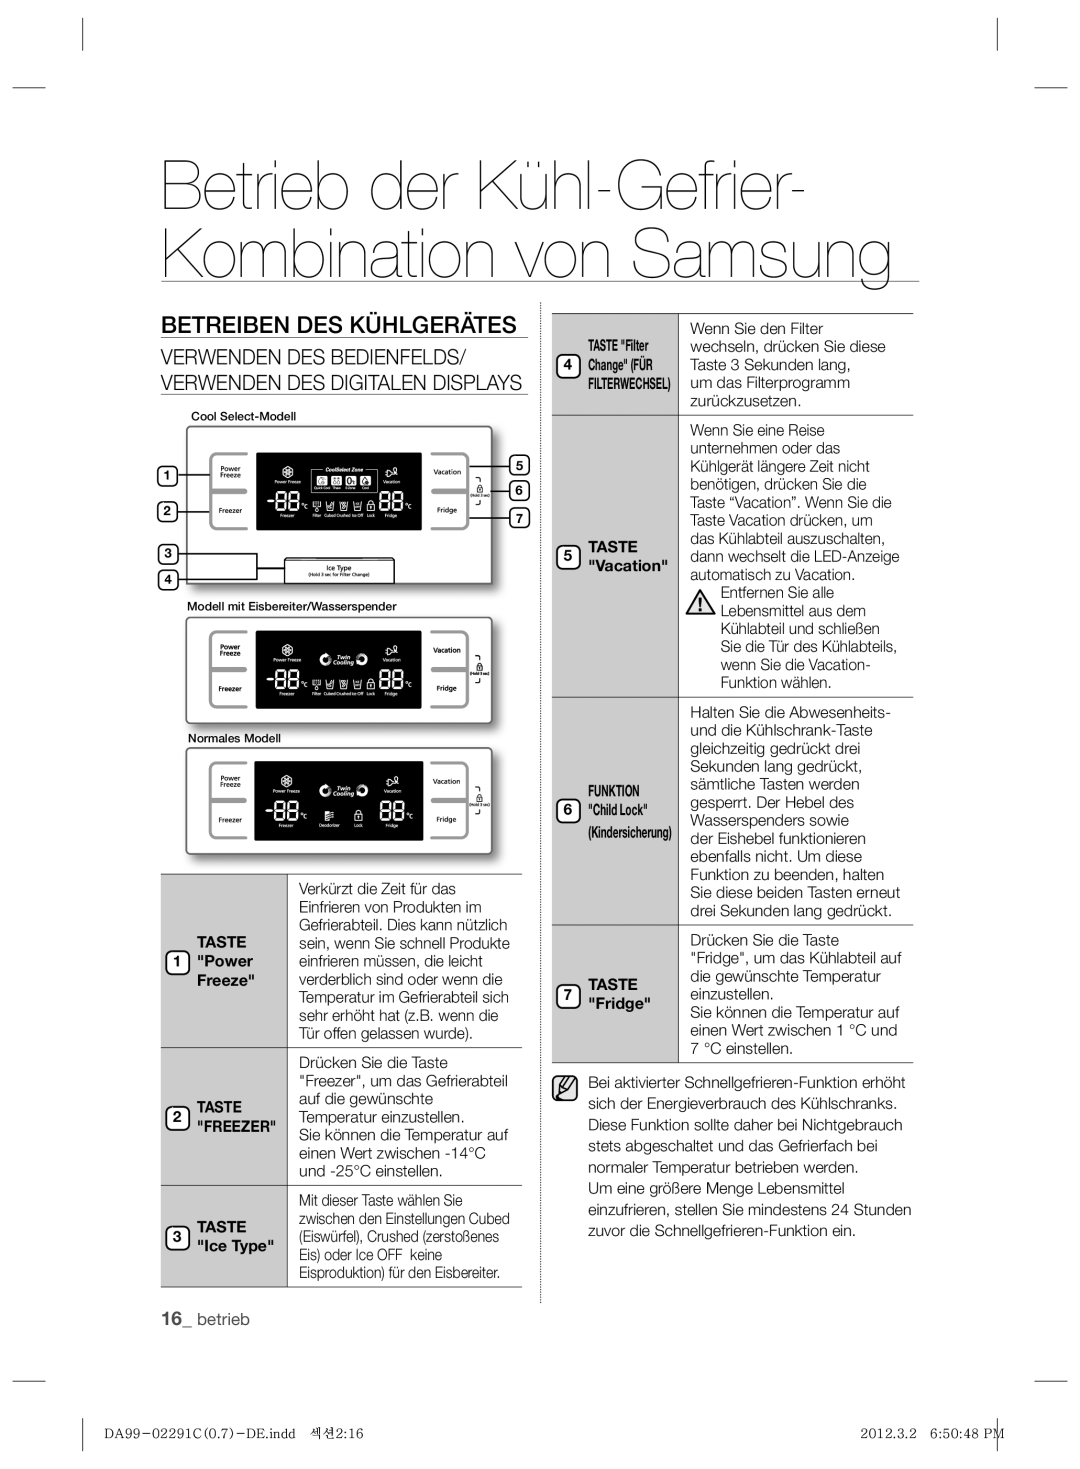 Samsung RSH7PNRS1/XEG, RSH7ZNRS1/EUR Betrieb der Kühl-Gefrier- Kombination von Samsung, Betreiben Des Kühlgerätes, betrieb 